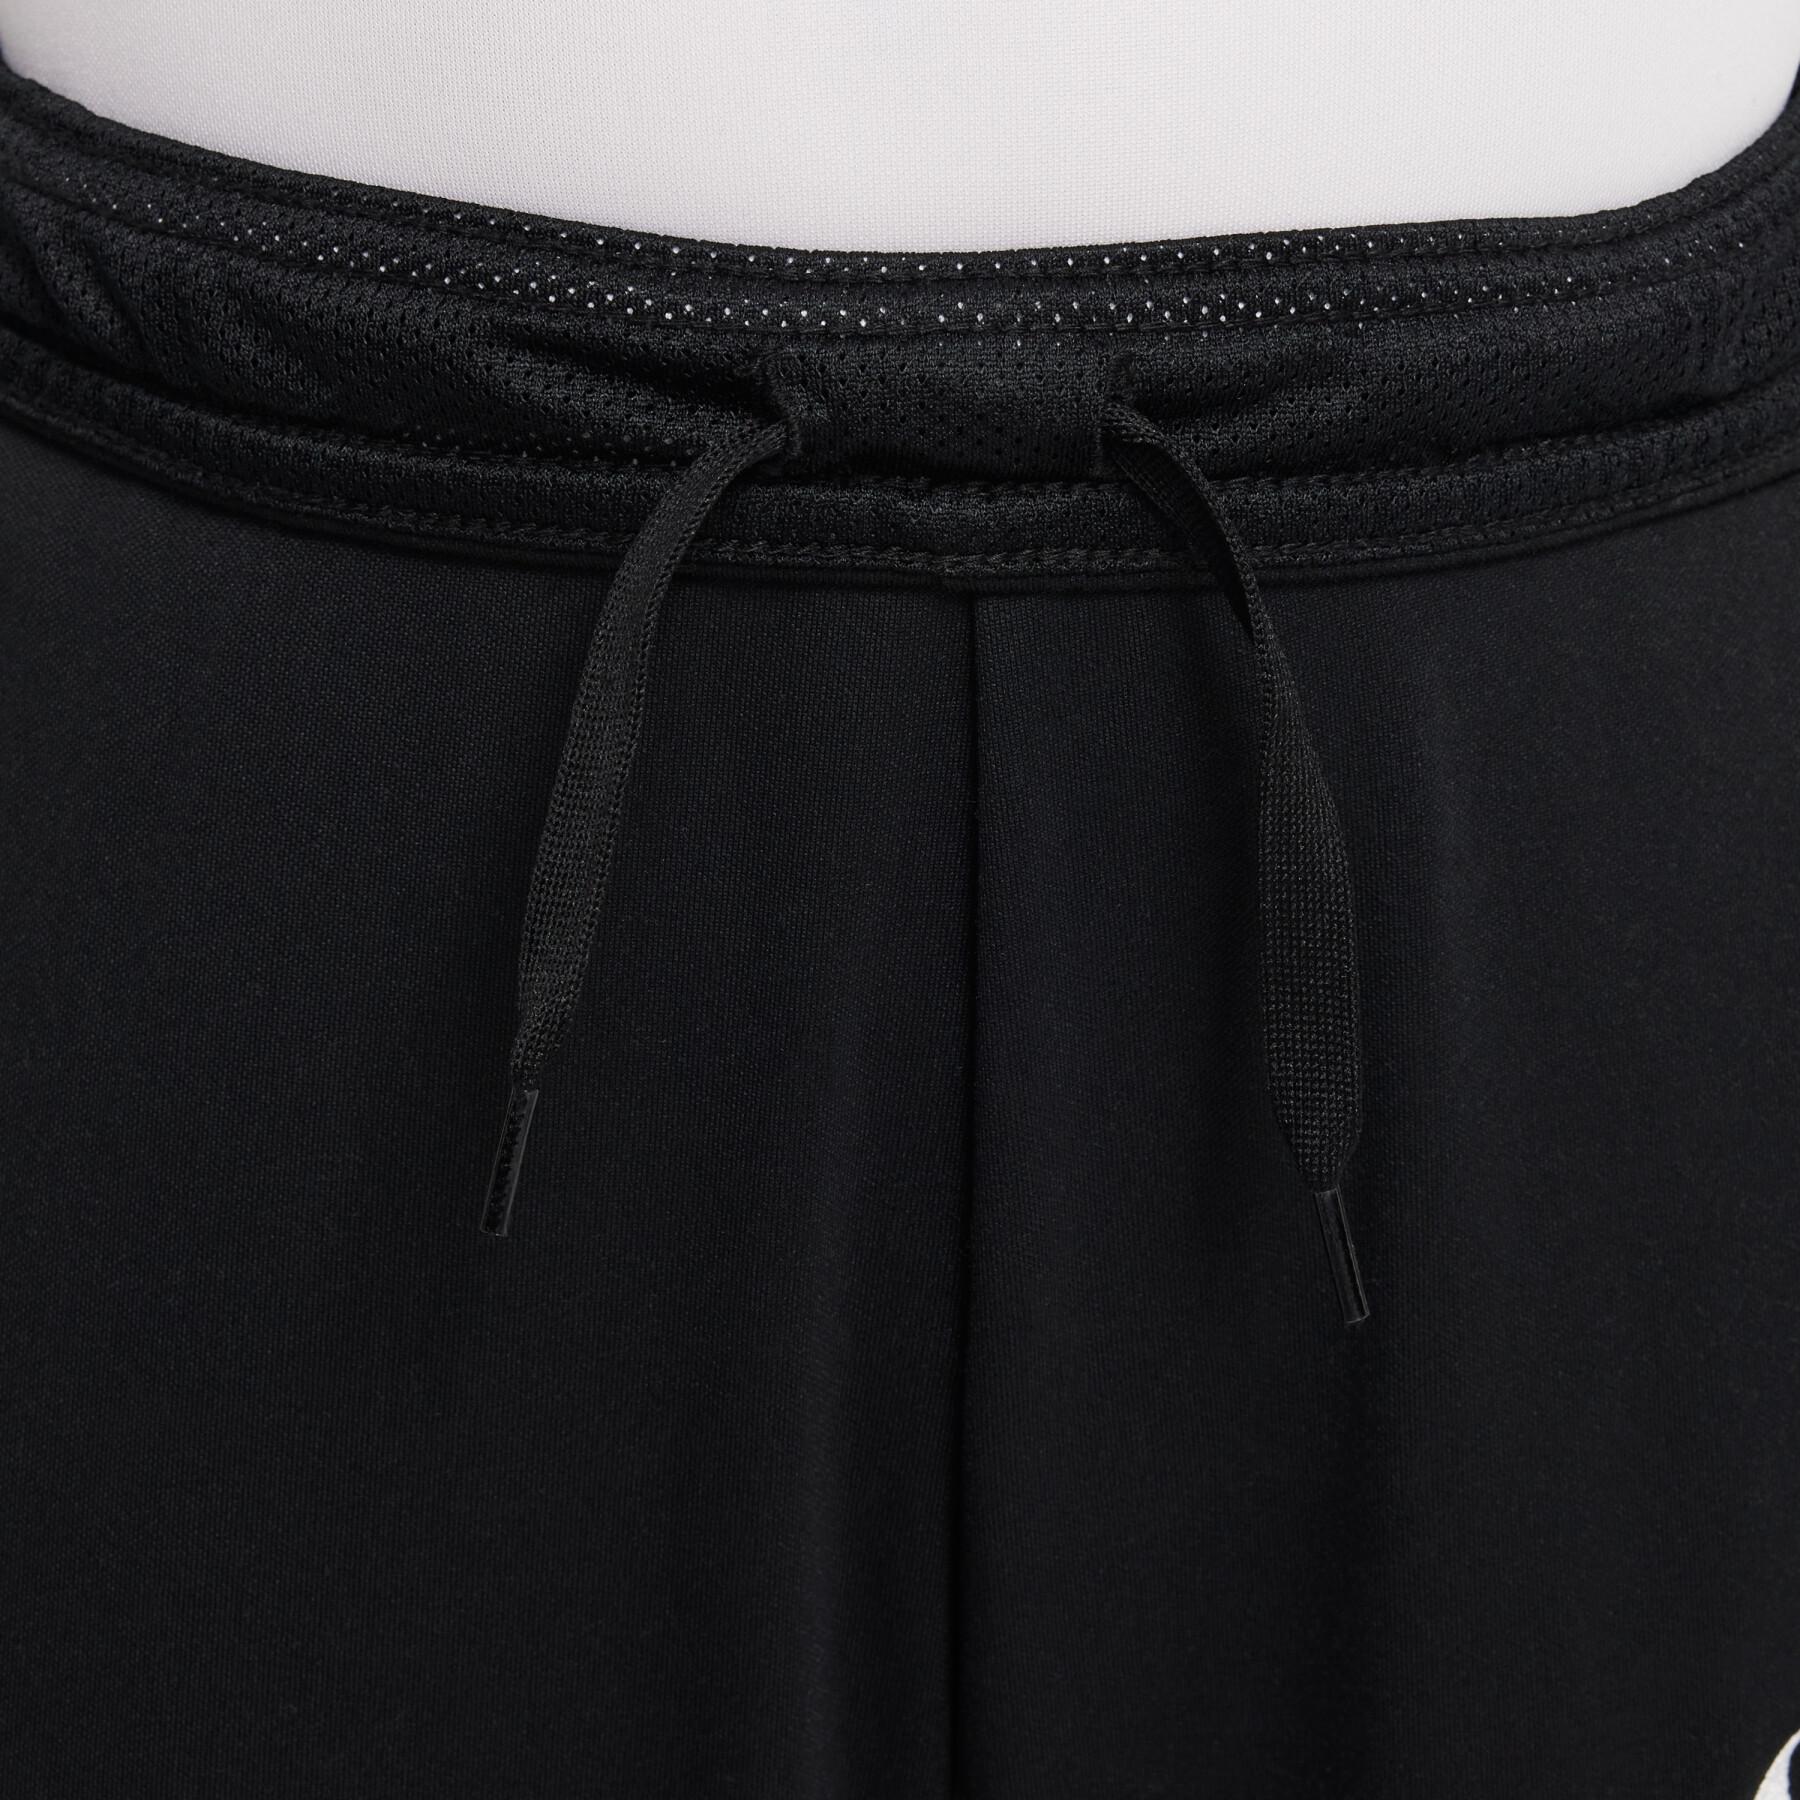 Children's Sweatpants suit Nike Dri-FIT Academy Pro